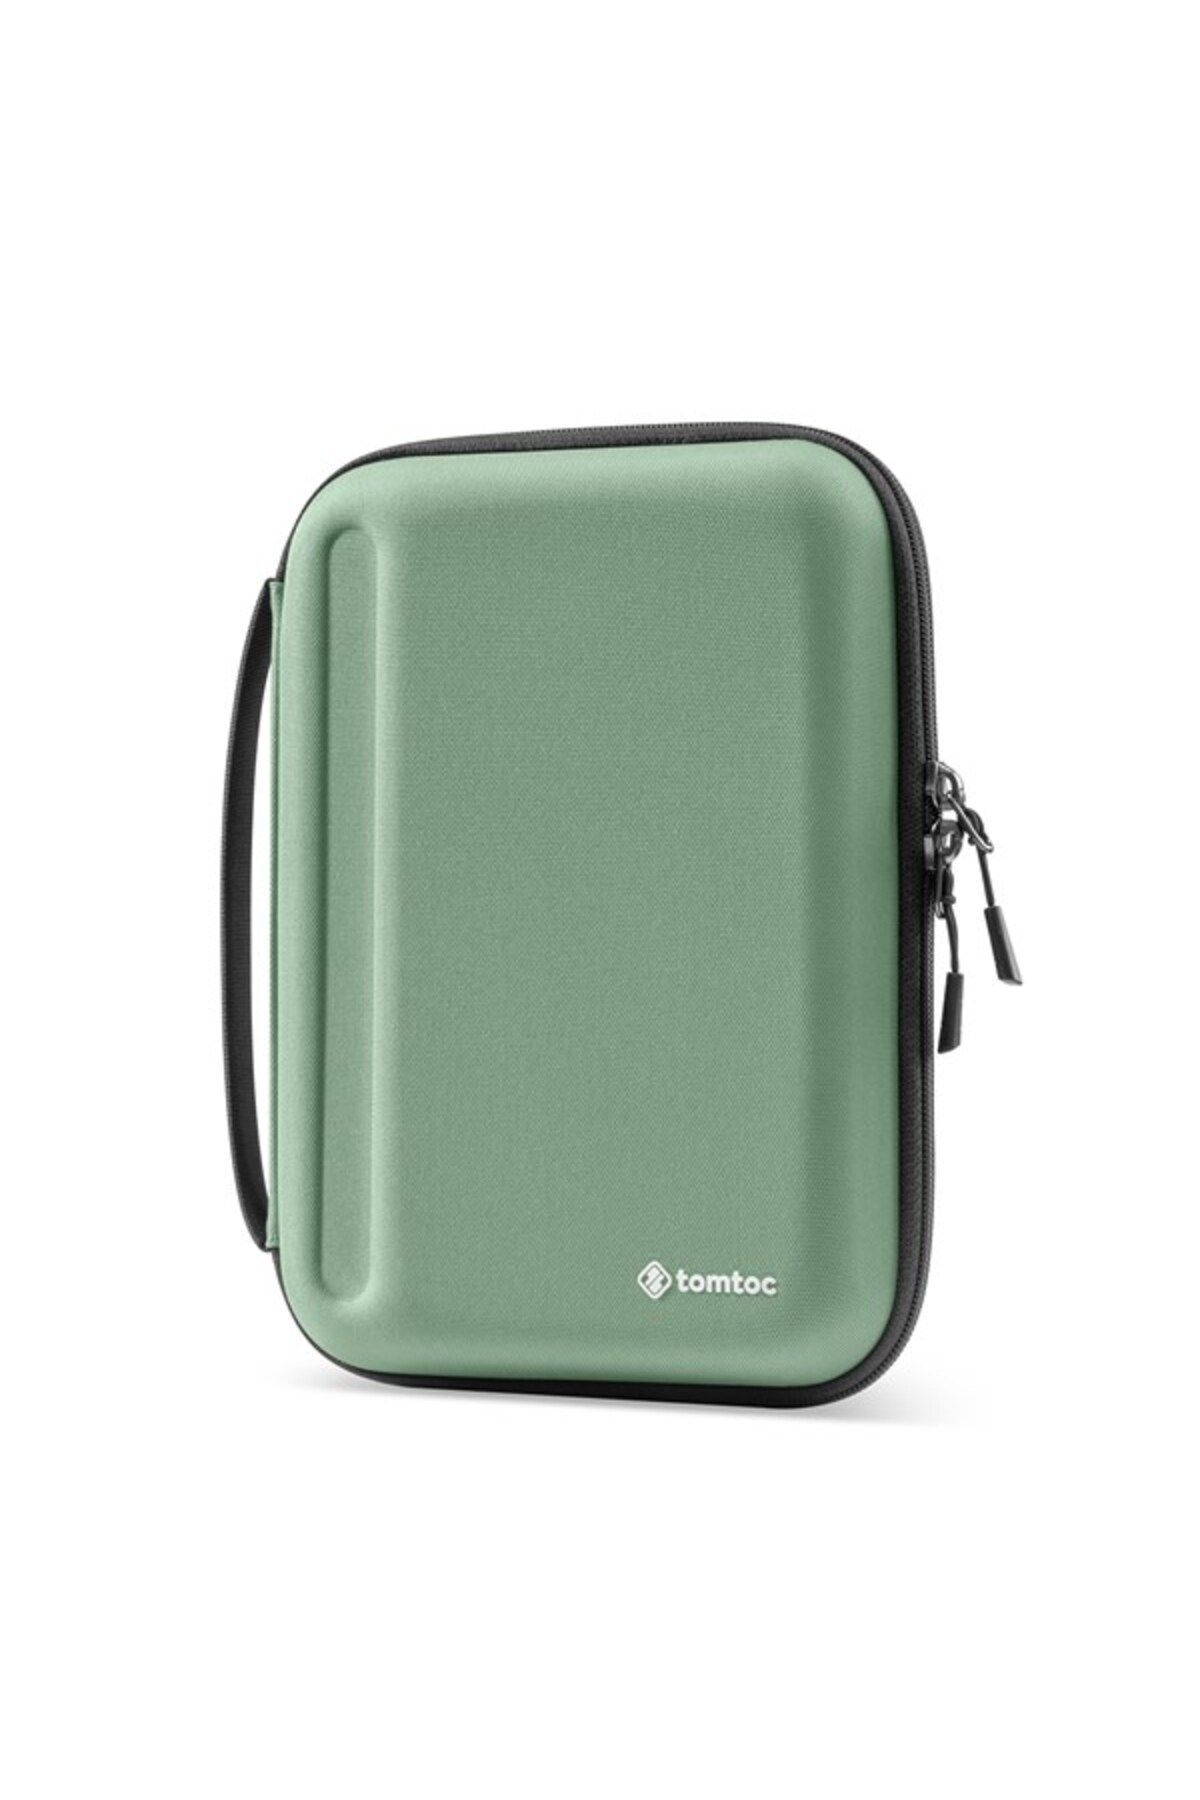 Tomtoc A06-005T03 - B06A2T1 Fancy Case-A06 Plus 11  Kaktüs Yeşili iPad Kılıfı